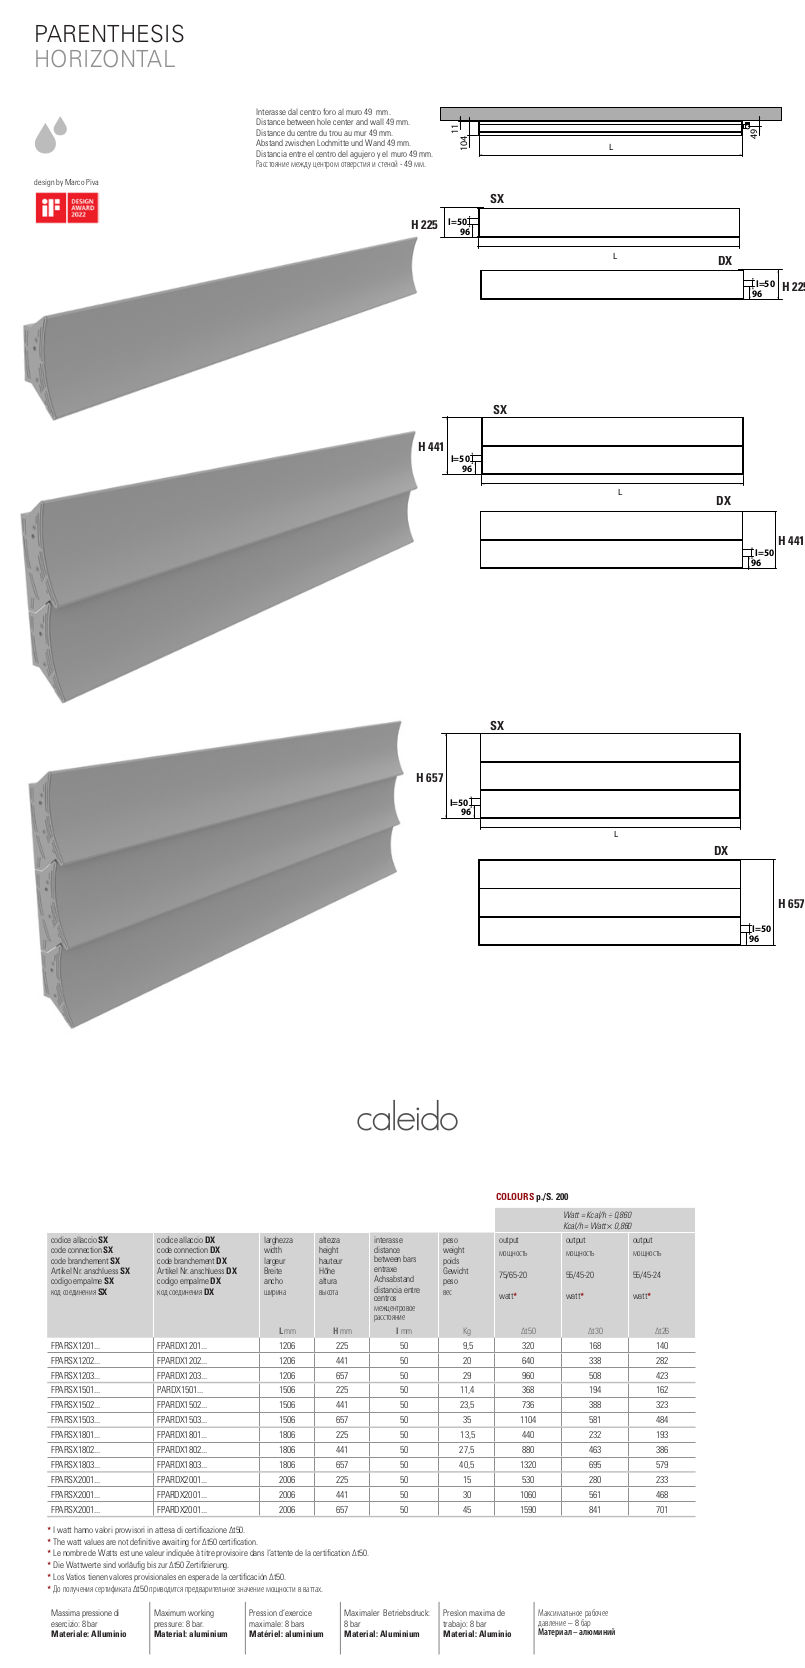 caleido parenthesis horizontal decorative radiator data sheet